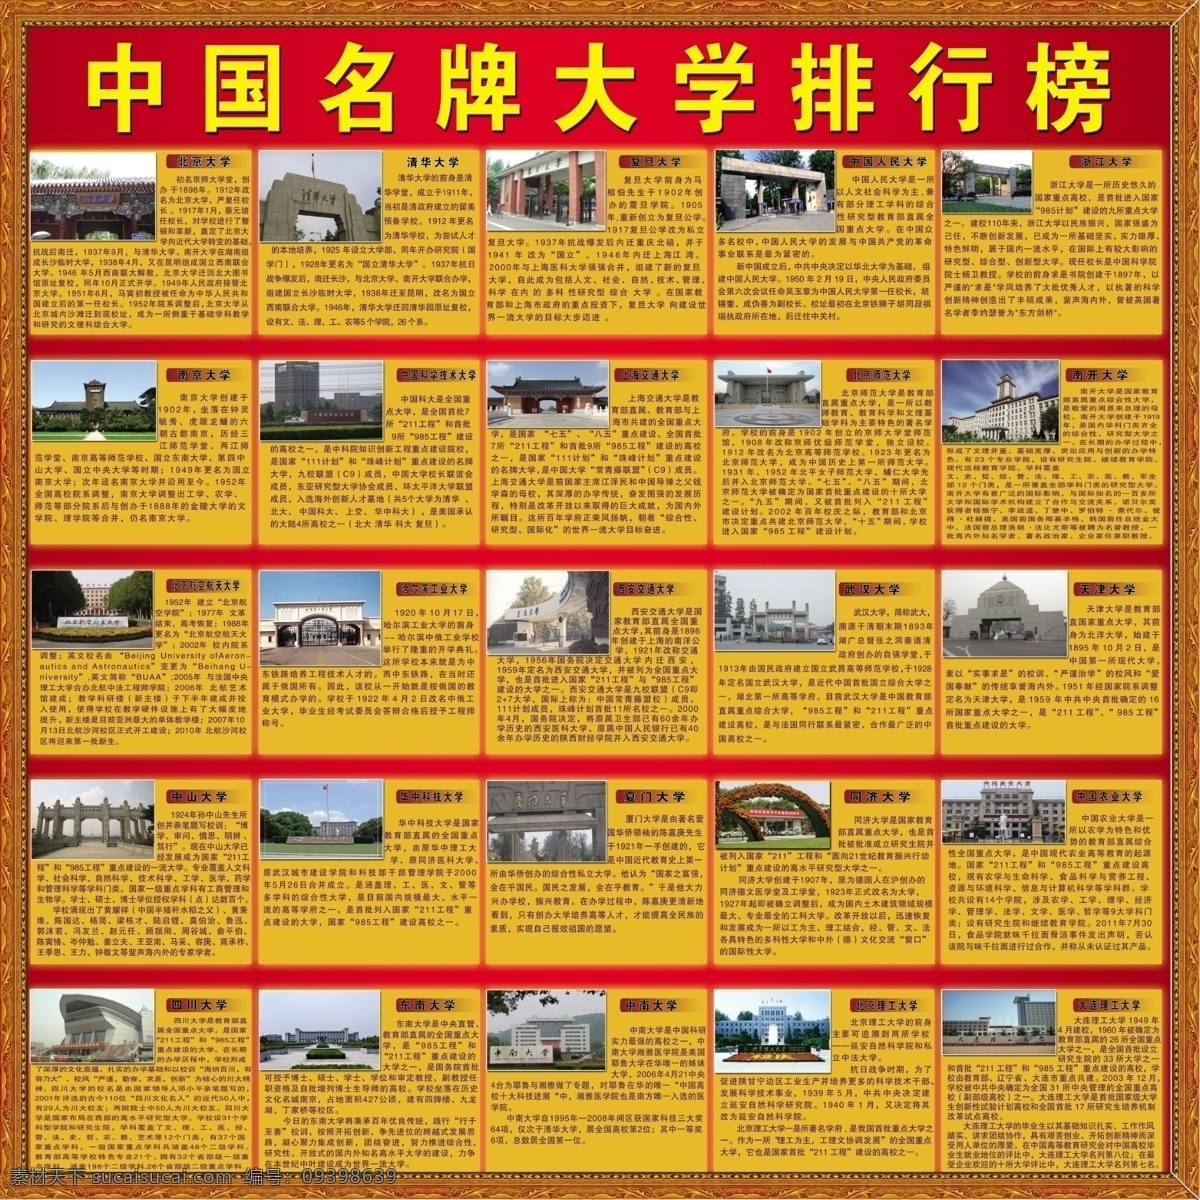 中国 名牌 大学 排行榜 中国大学 前 名 大学图 大学简介 展板模板 广告设计模板 源文件